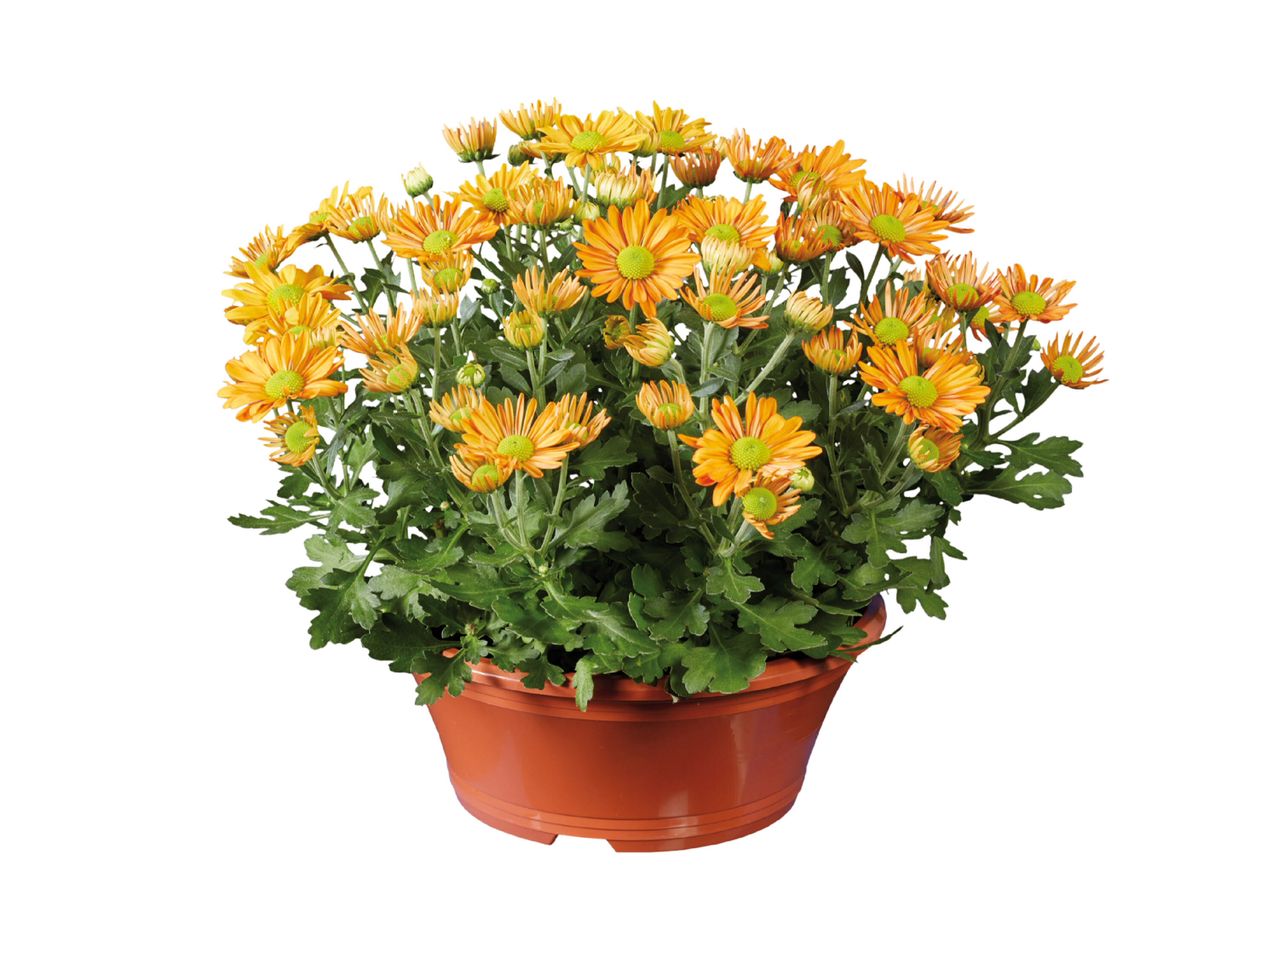 Accesați vizualizarea pe ecran complet: Crizantema multifloră în coș decorativ - Imagine 1